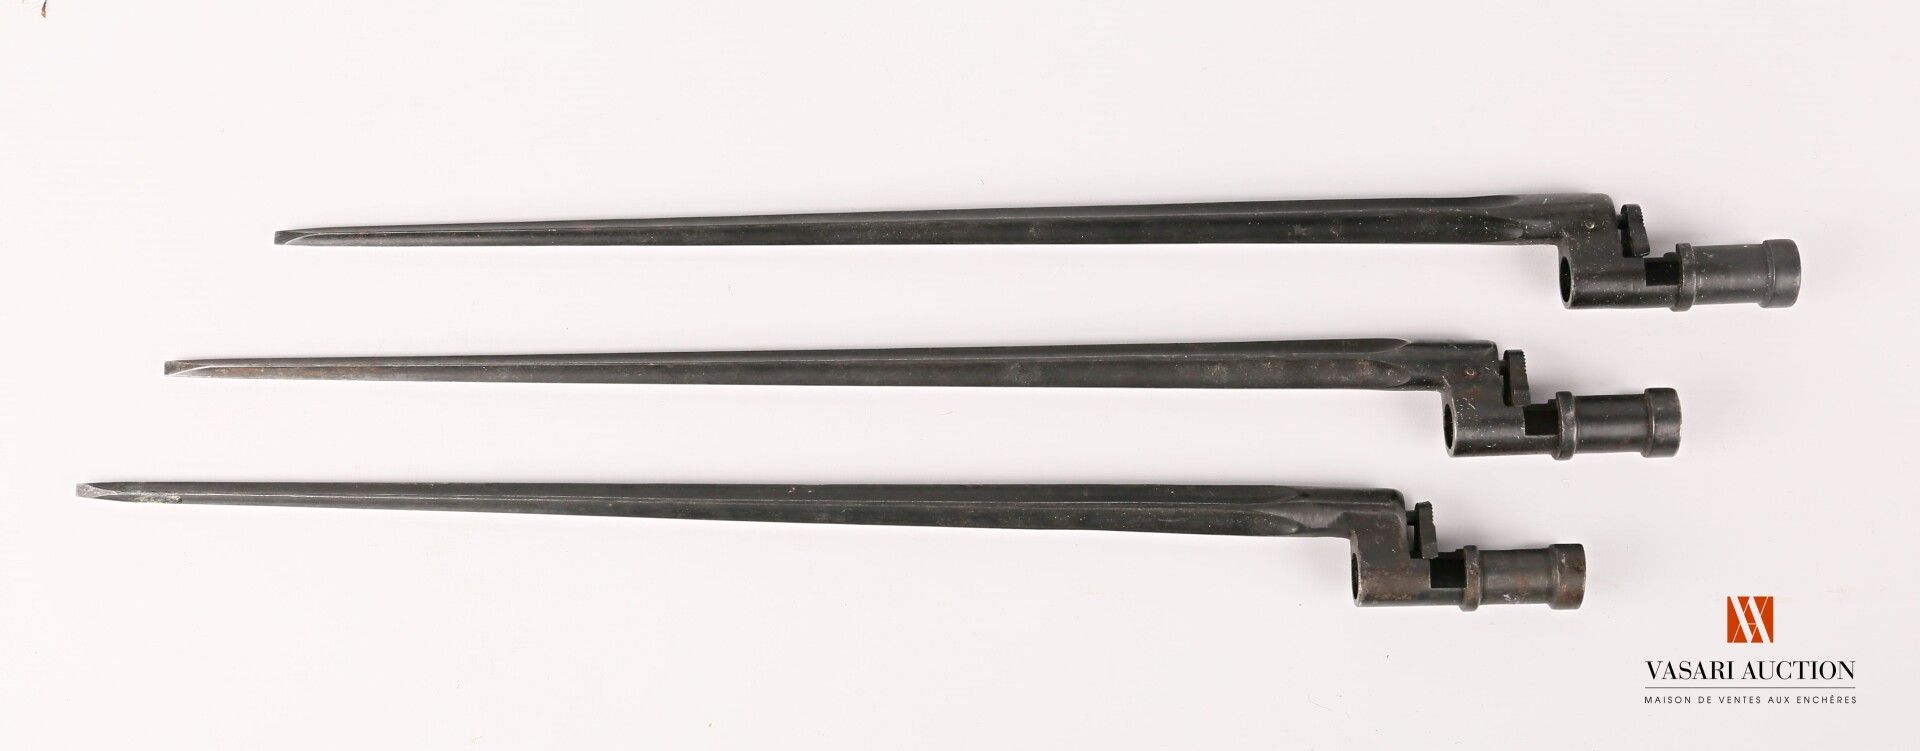 Null Bayoneta cruciforme para fusil Mosin-Nagant 1891, hoja 445 mm, acabado fosf&hellip;